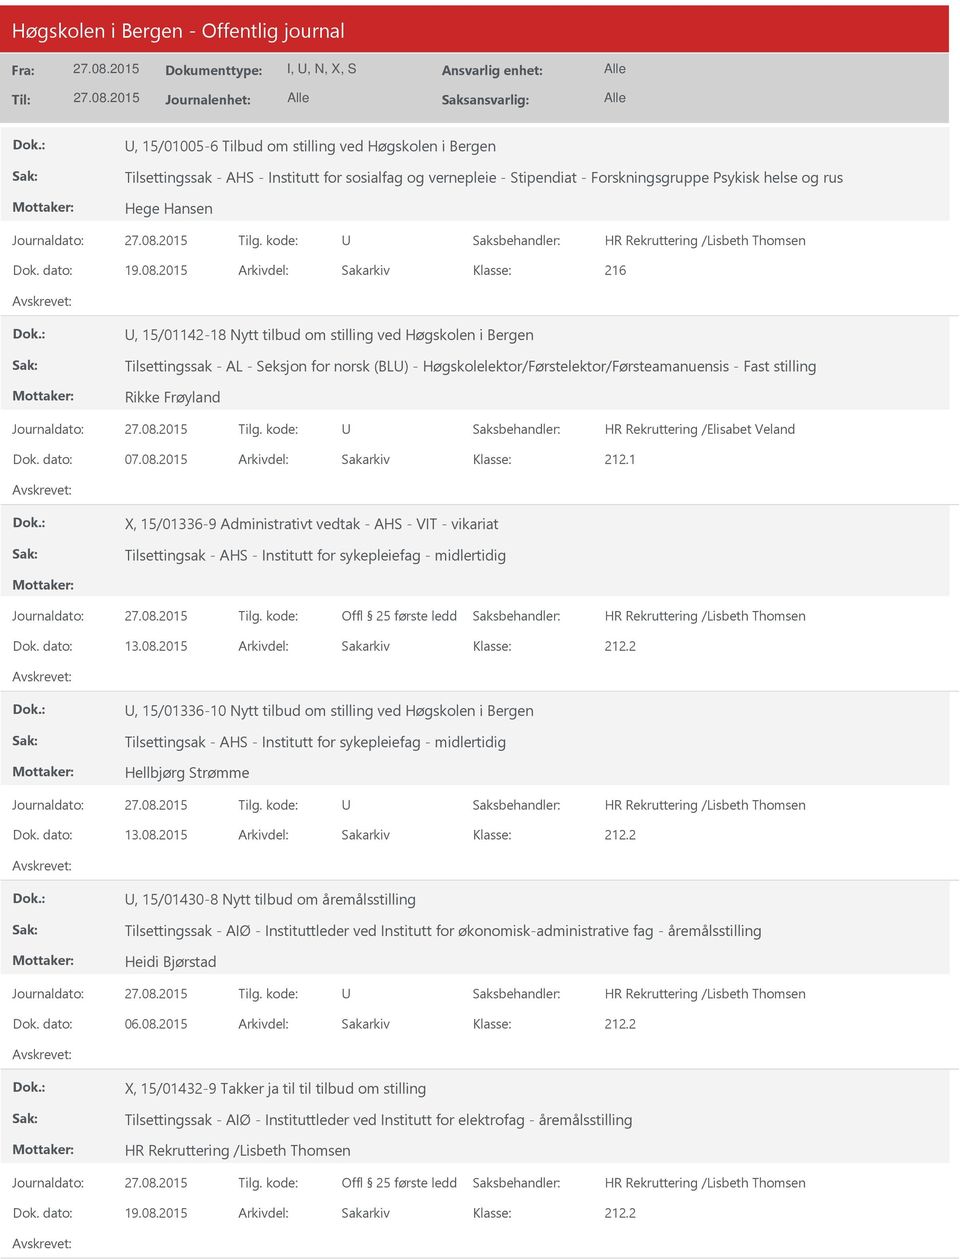 2015 Arkivdel: Sakarkiv 216, 15/01142-18 Nytt tilbud om stilling ved Høgskolen i Bergen Tilsettingssak - AL - Seksjon for norsk (BL) - Høgskolelektor/Førstelektor/Førsteamanuensis - Fast stilling